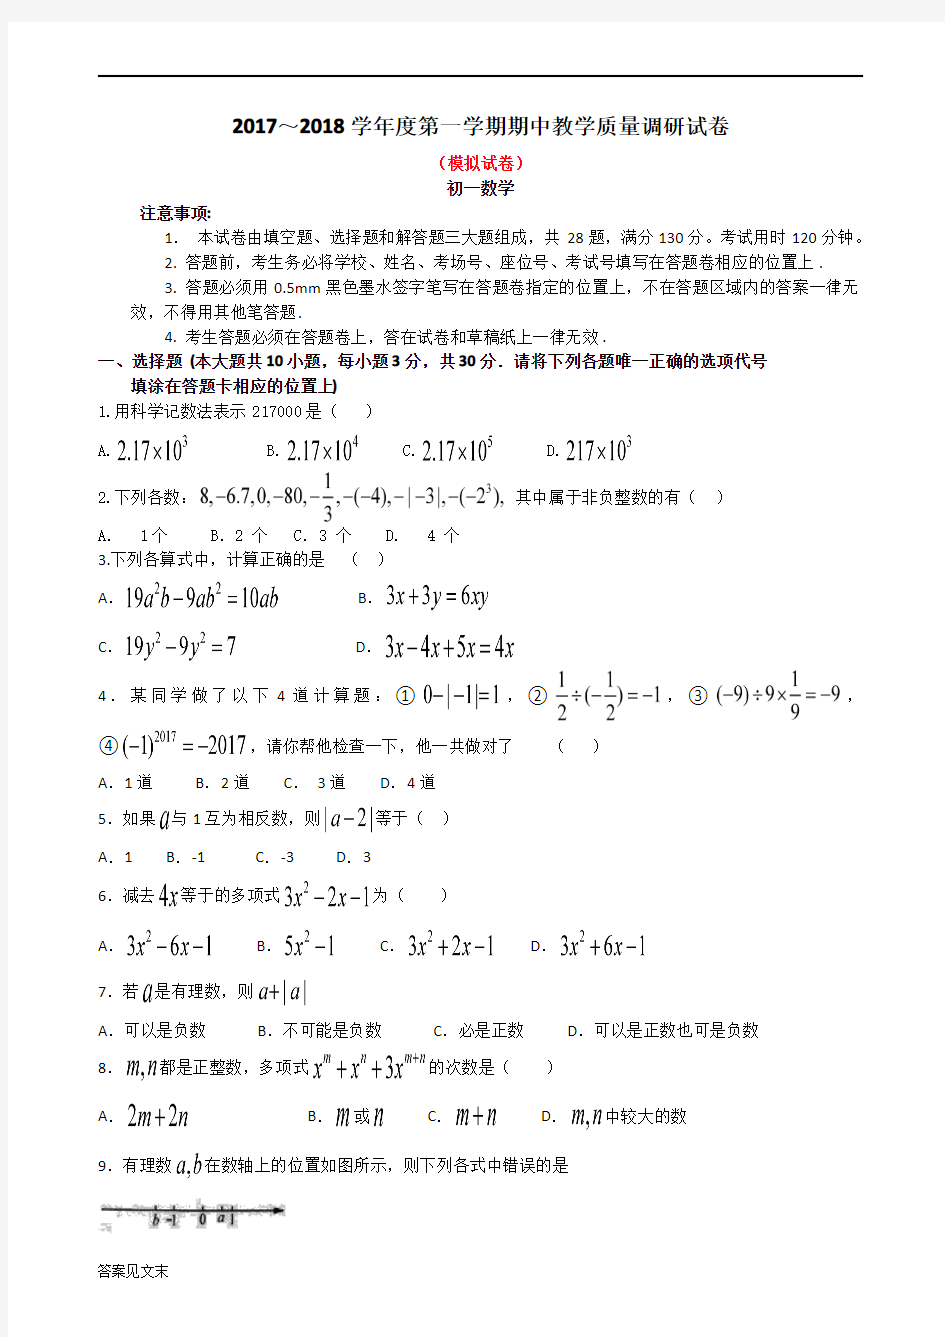 初一期中考试数学模拟试卷(一)